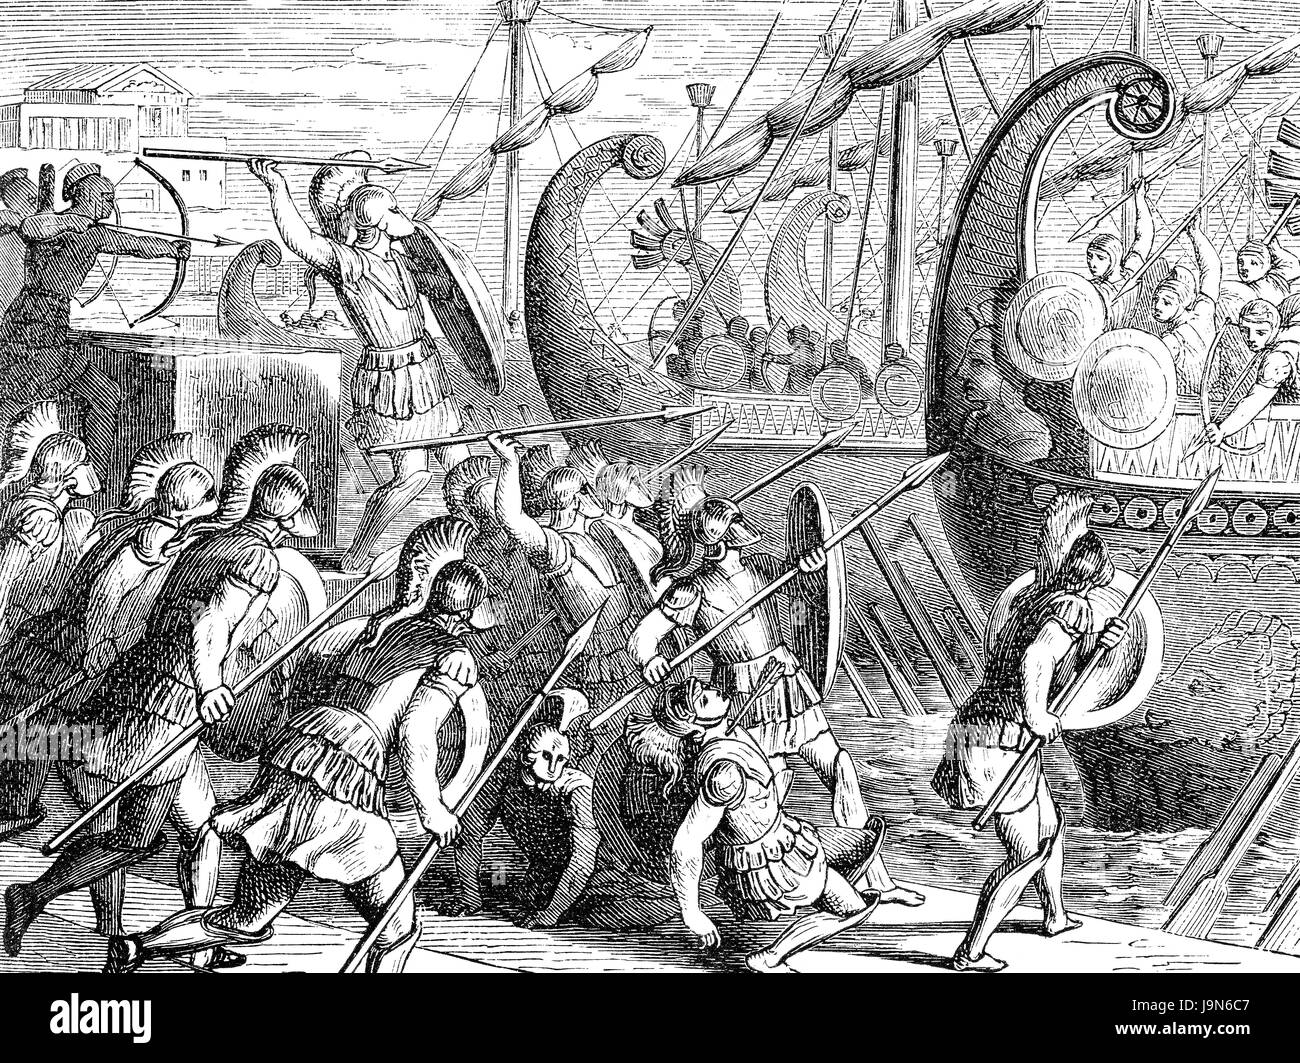 Brasidas, un officier Spartan, defendering le port de Methone ou Methoni, tandis que la flotte athénienne à attaquer, guerre du Péloponnèse Banque D'Images